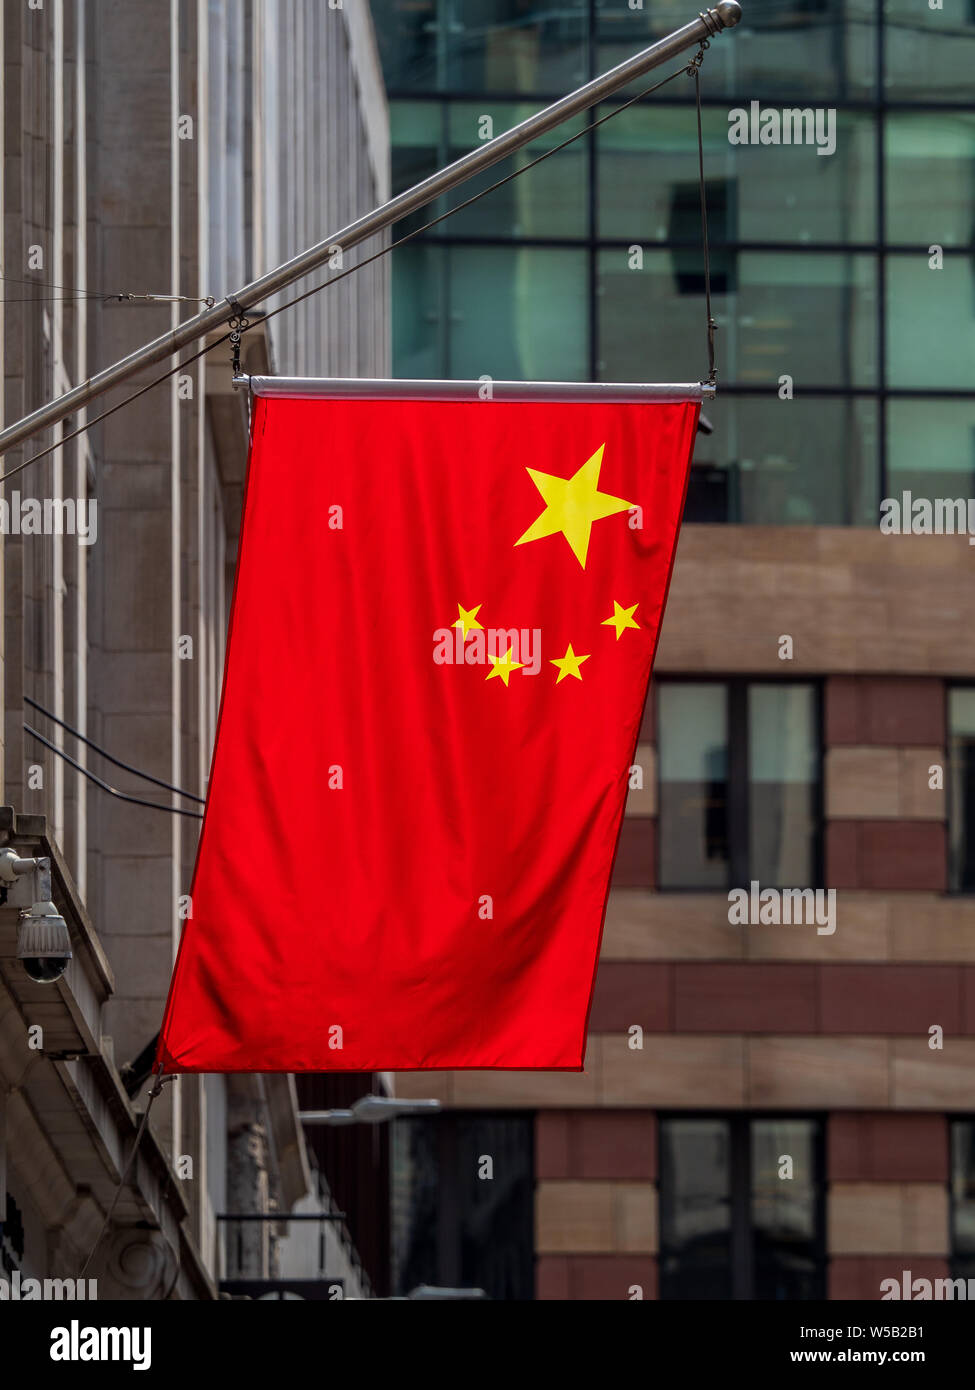 Chinesische Flaggen in der Londoner City - Chinesische Flaggen die wachsende Präsenz der chinesischen Banken in der City von London Financial District. Stockfoto